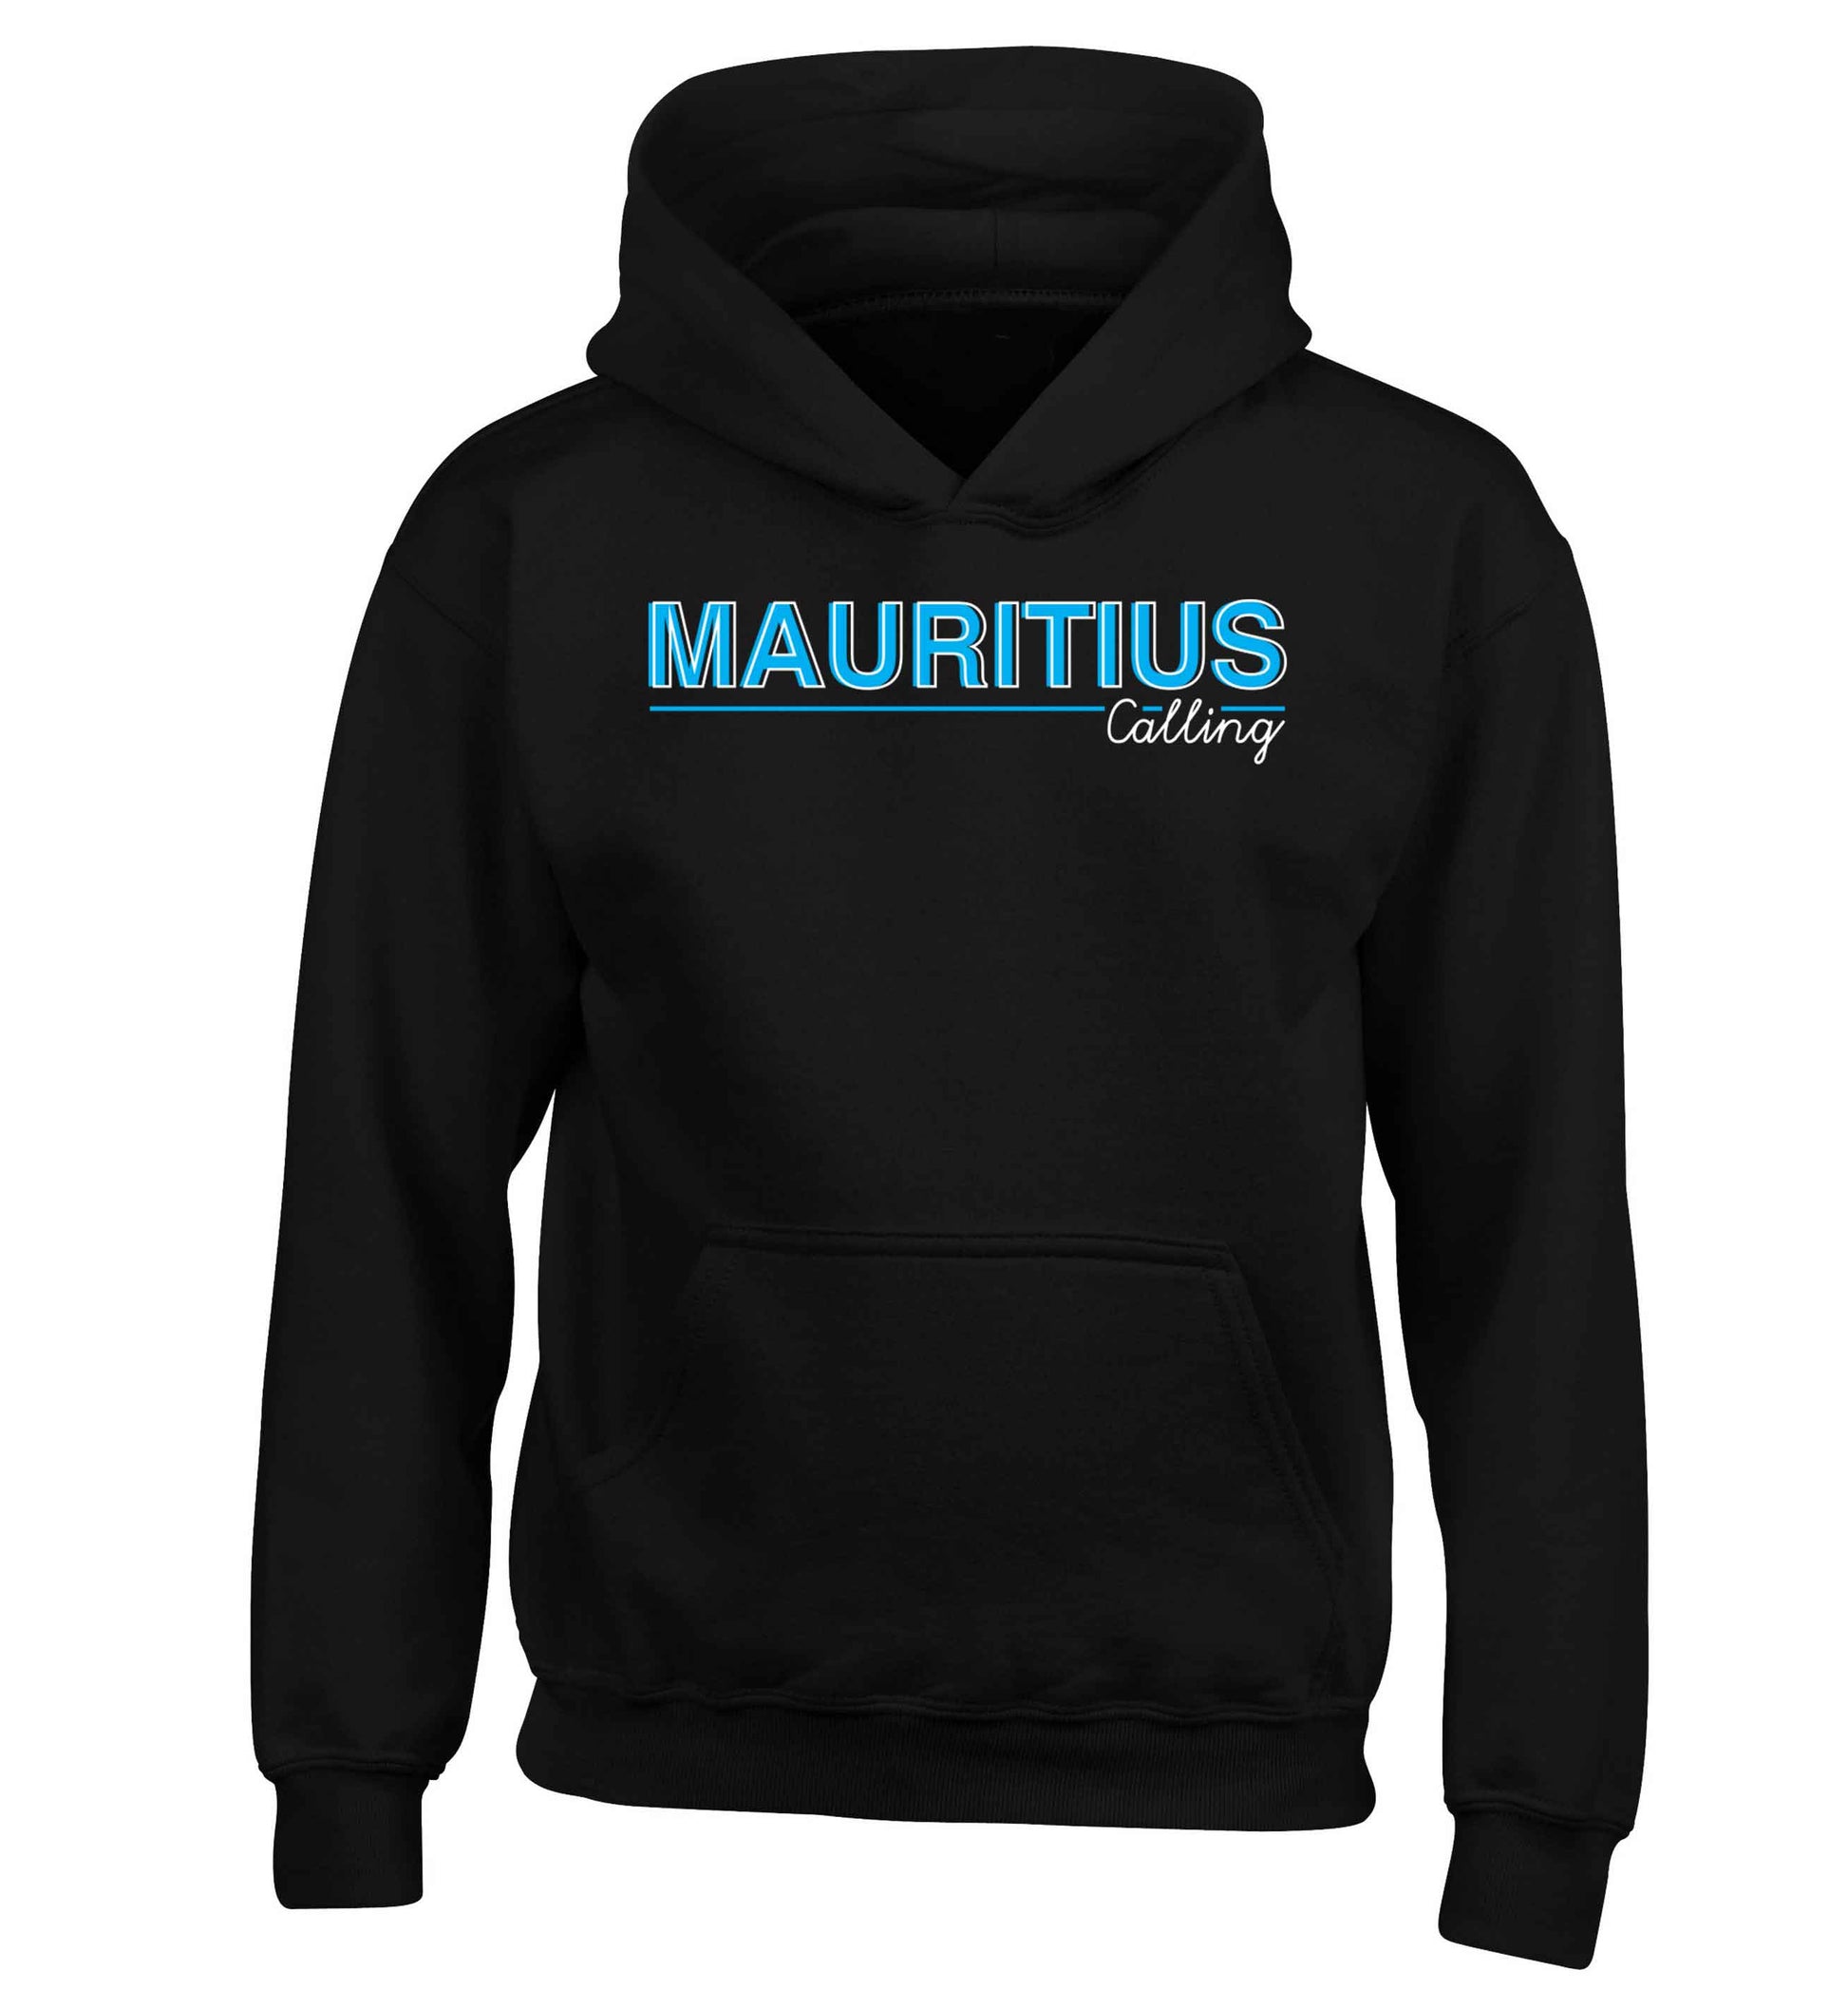 Mauritius calling children's black hoodie 12-13 Years